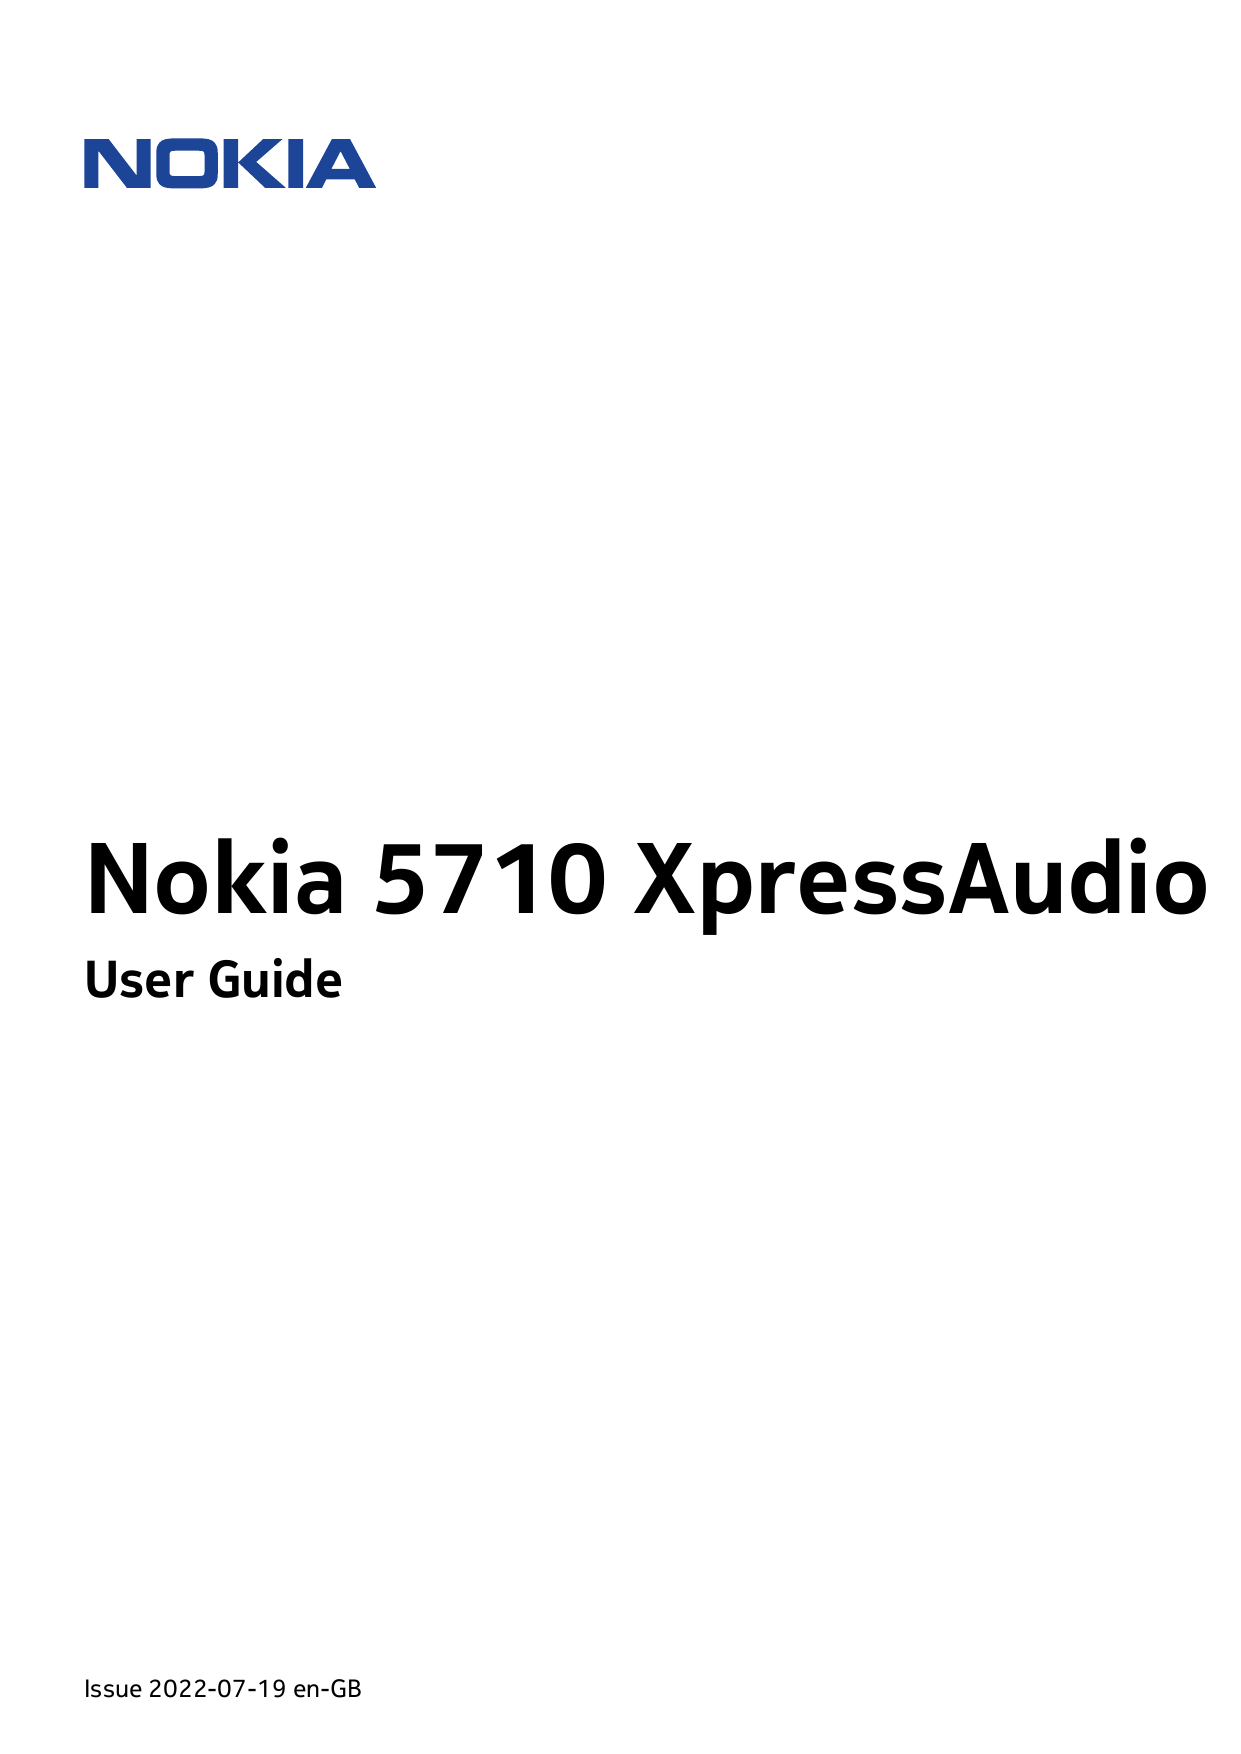 Nokia 5710 XpressAudioUser GuideIssue 2022-07-19 en-GB